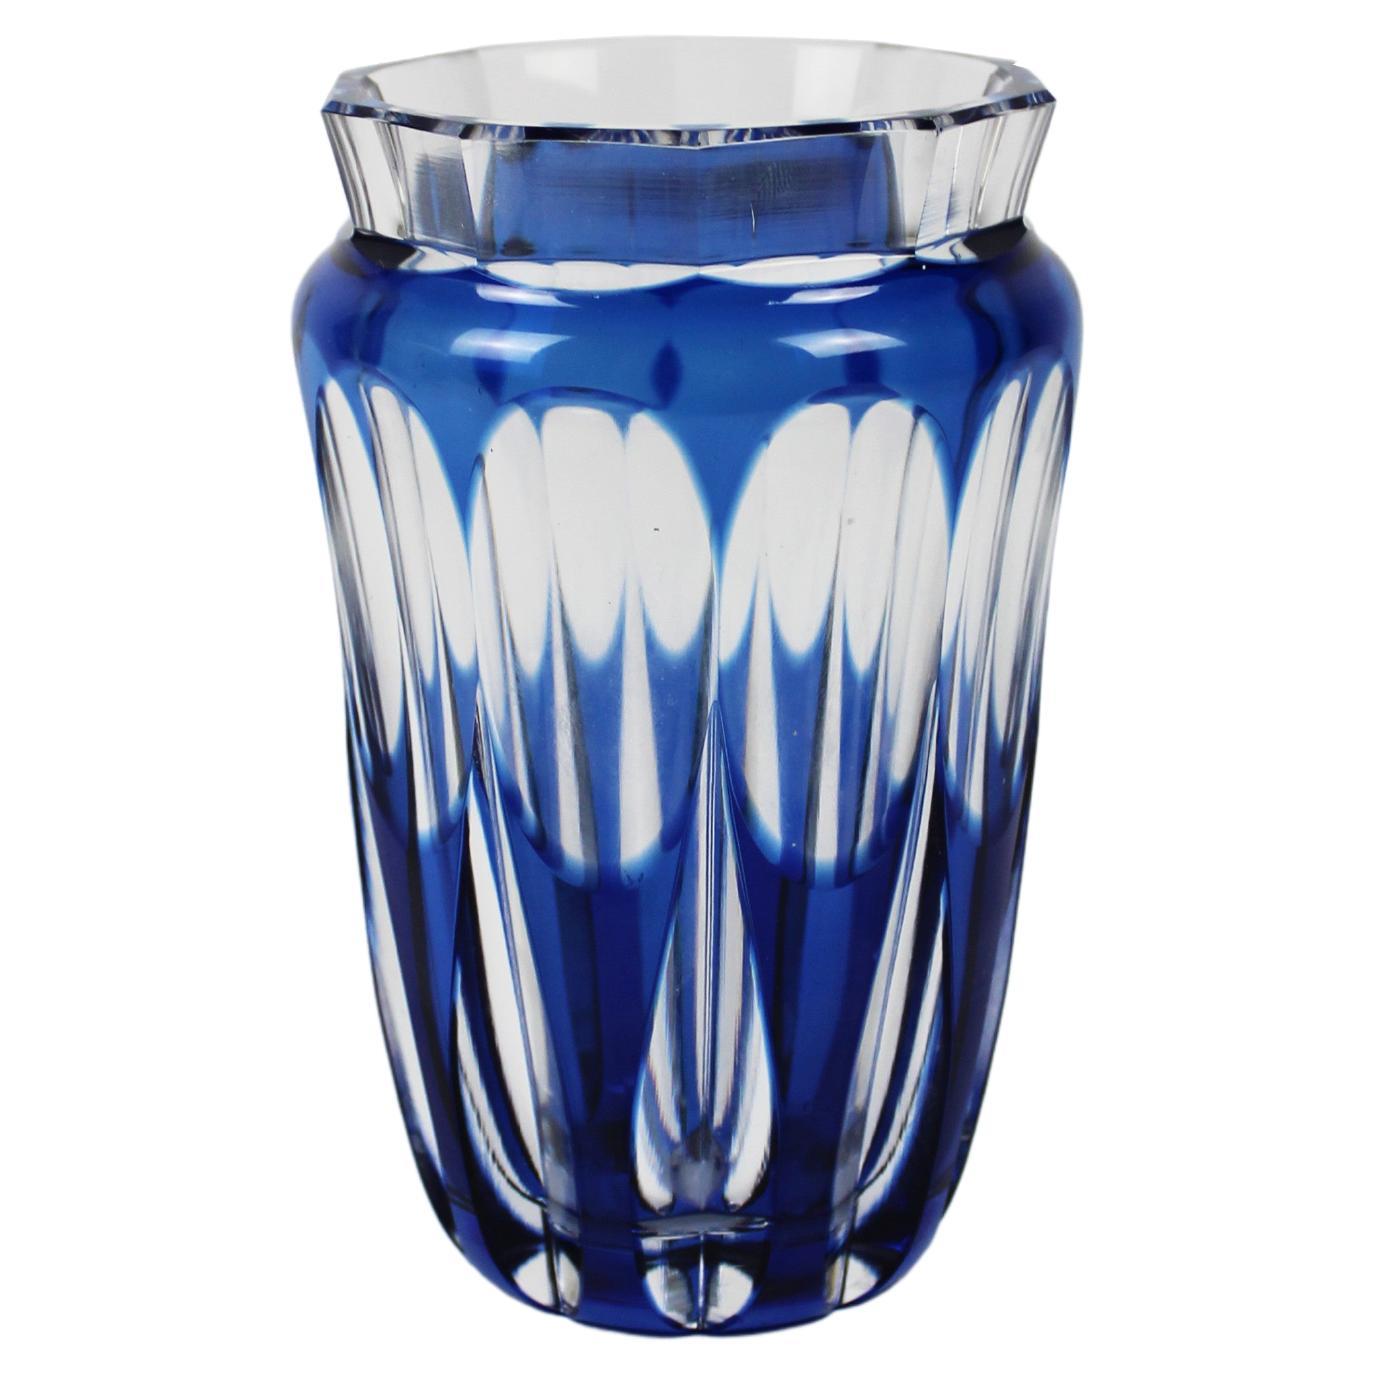 Val St Lambert Vase Art Glass Crystal Blue Art Deco Signed 1950's Belgium